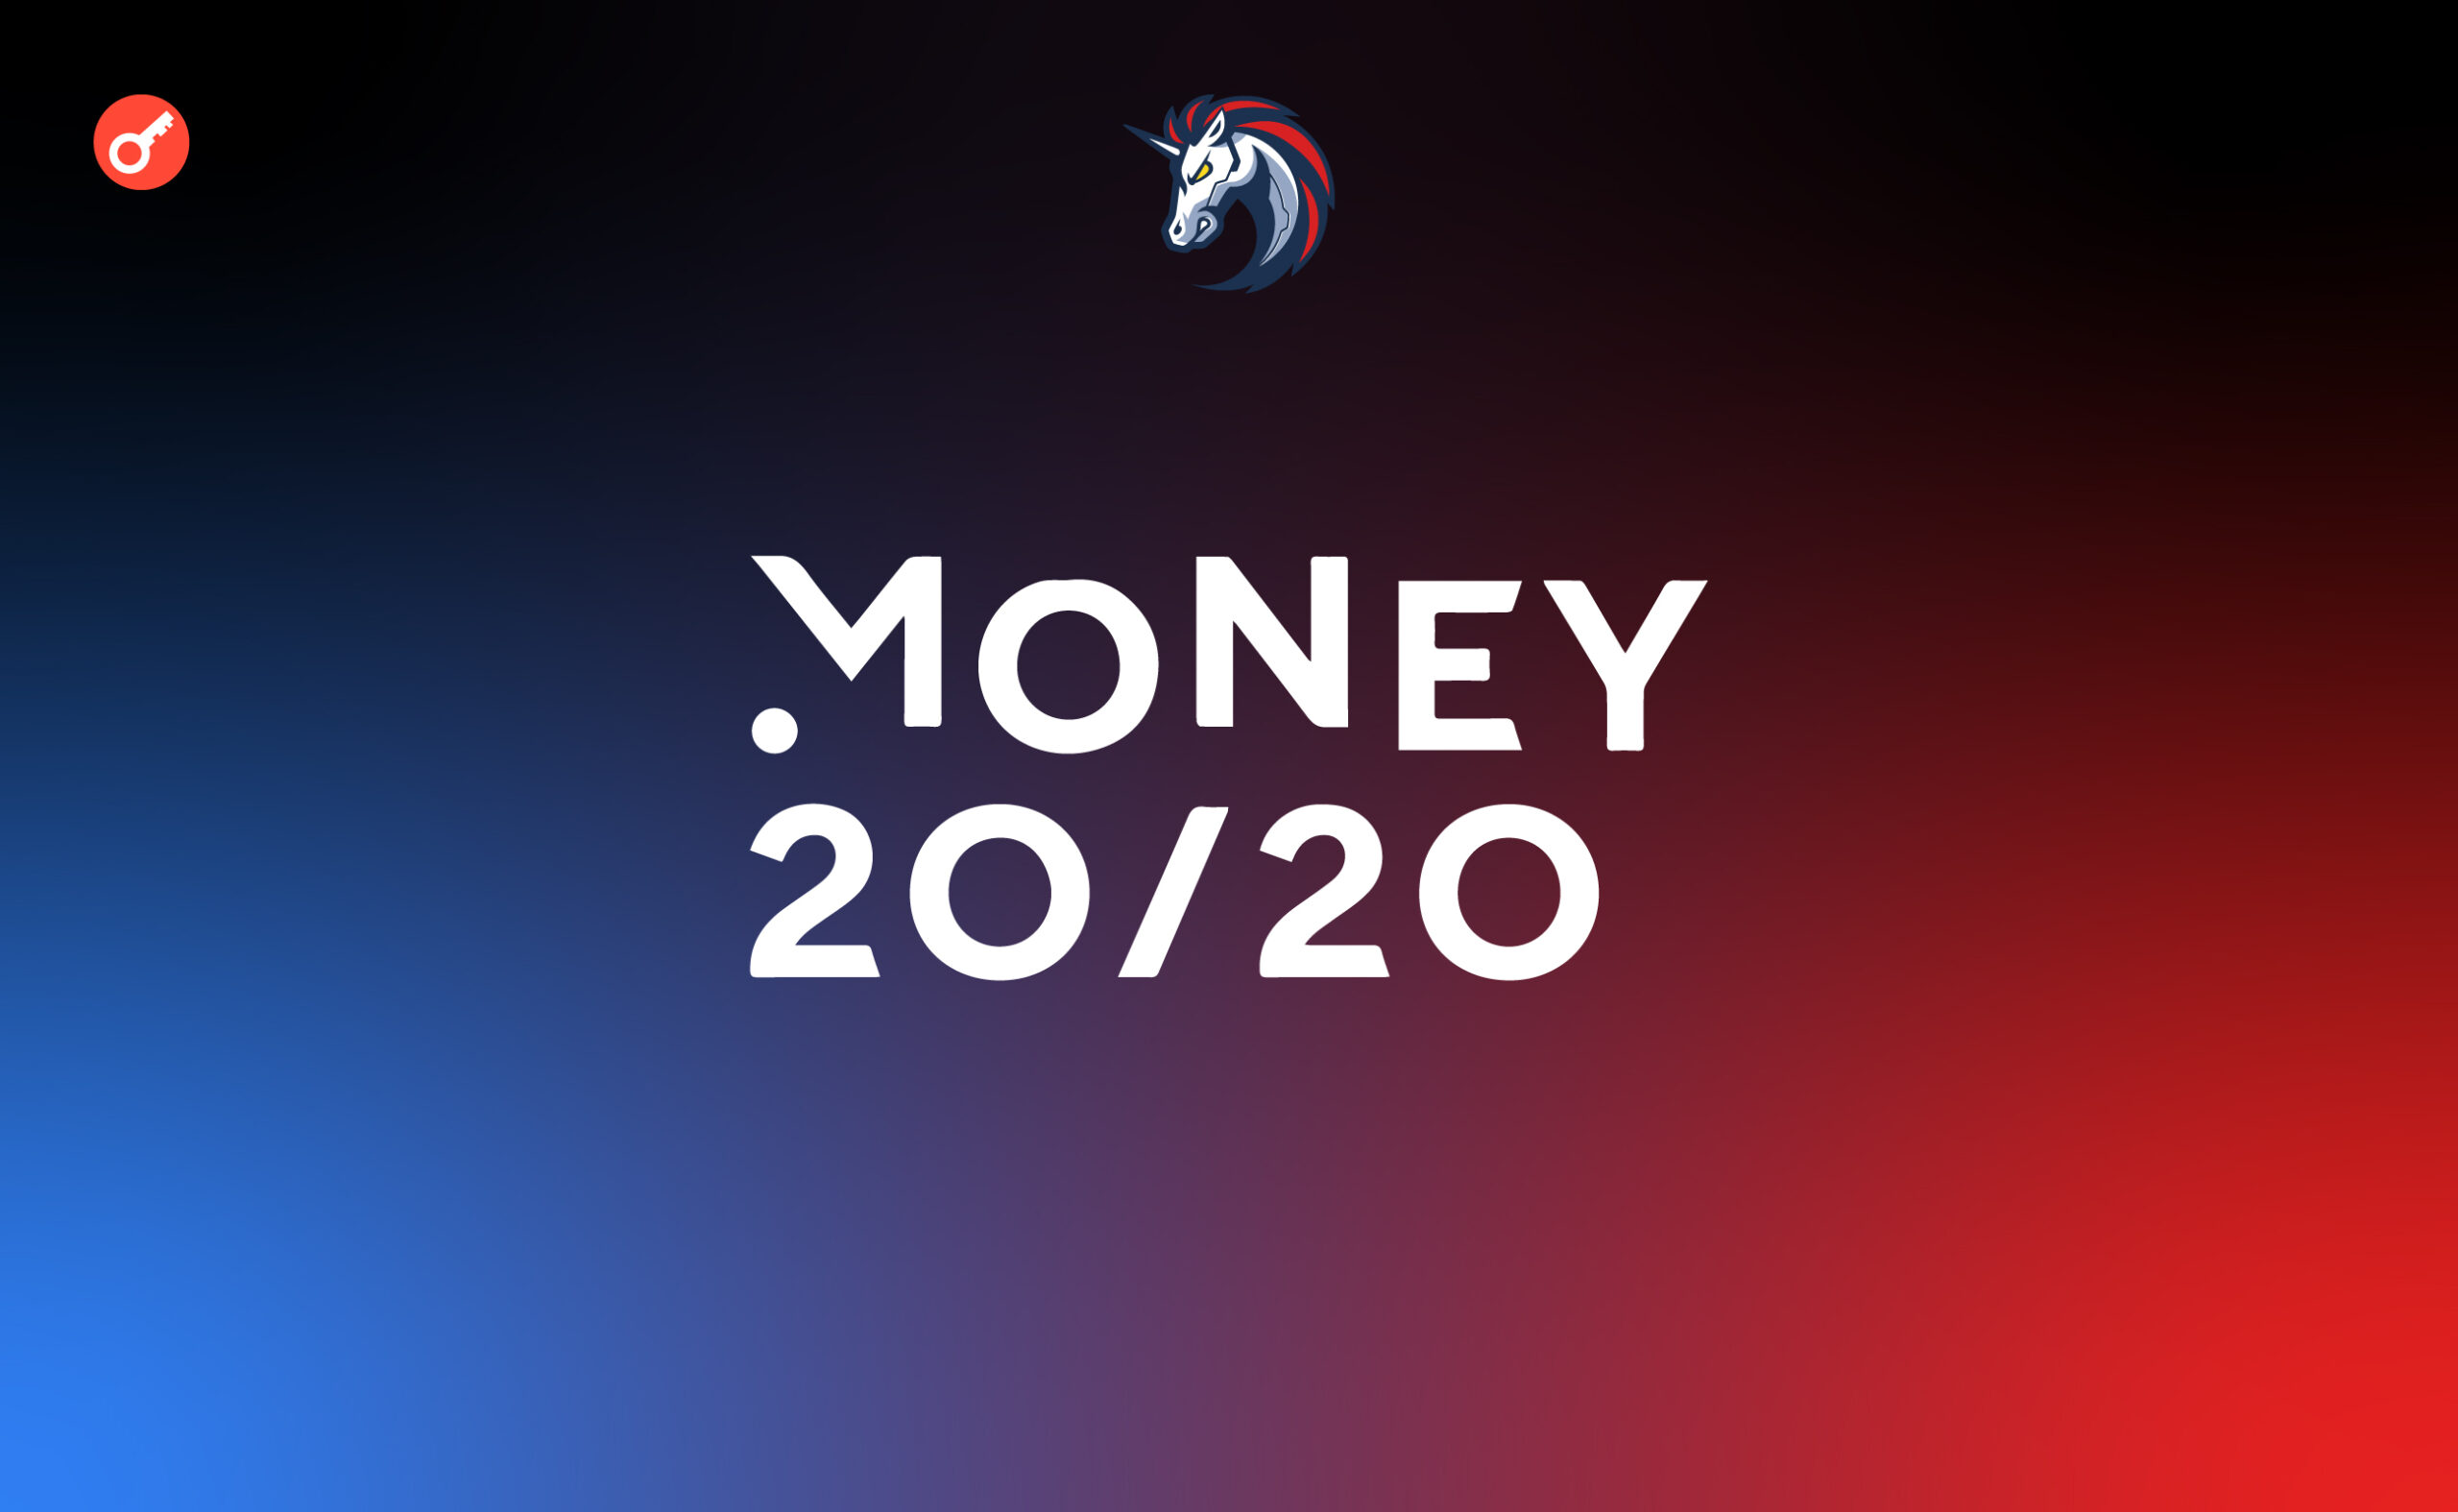 Money 20/20 в Амстердаме: подробности, кейсы и впечатления от команды 1inch. Заглавный коллаж новости.